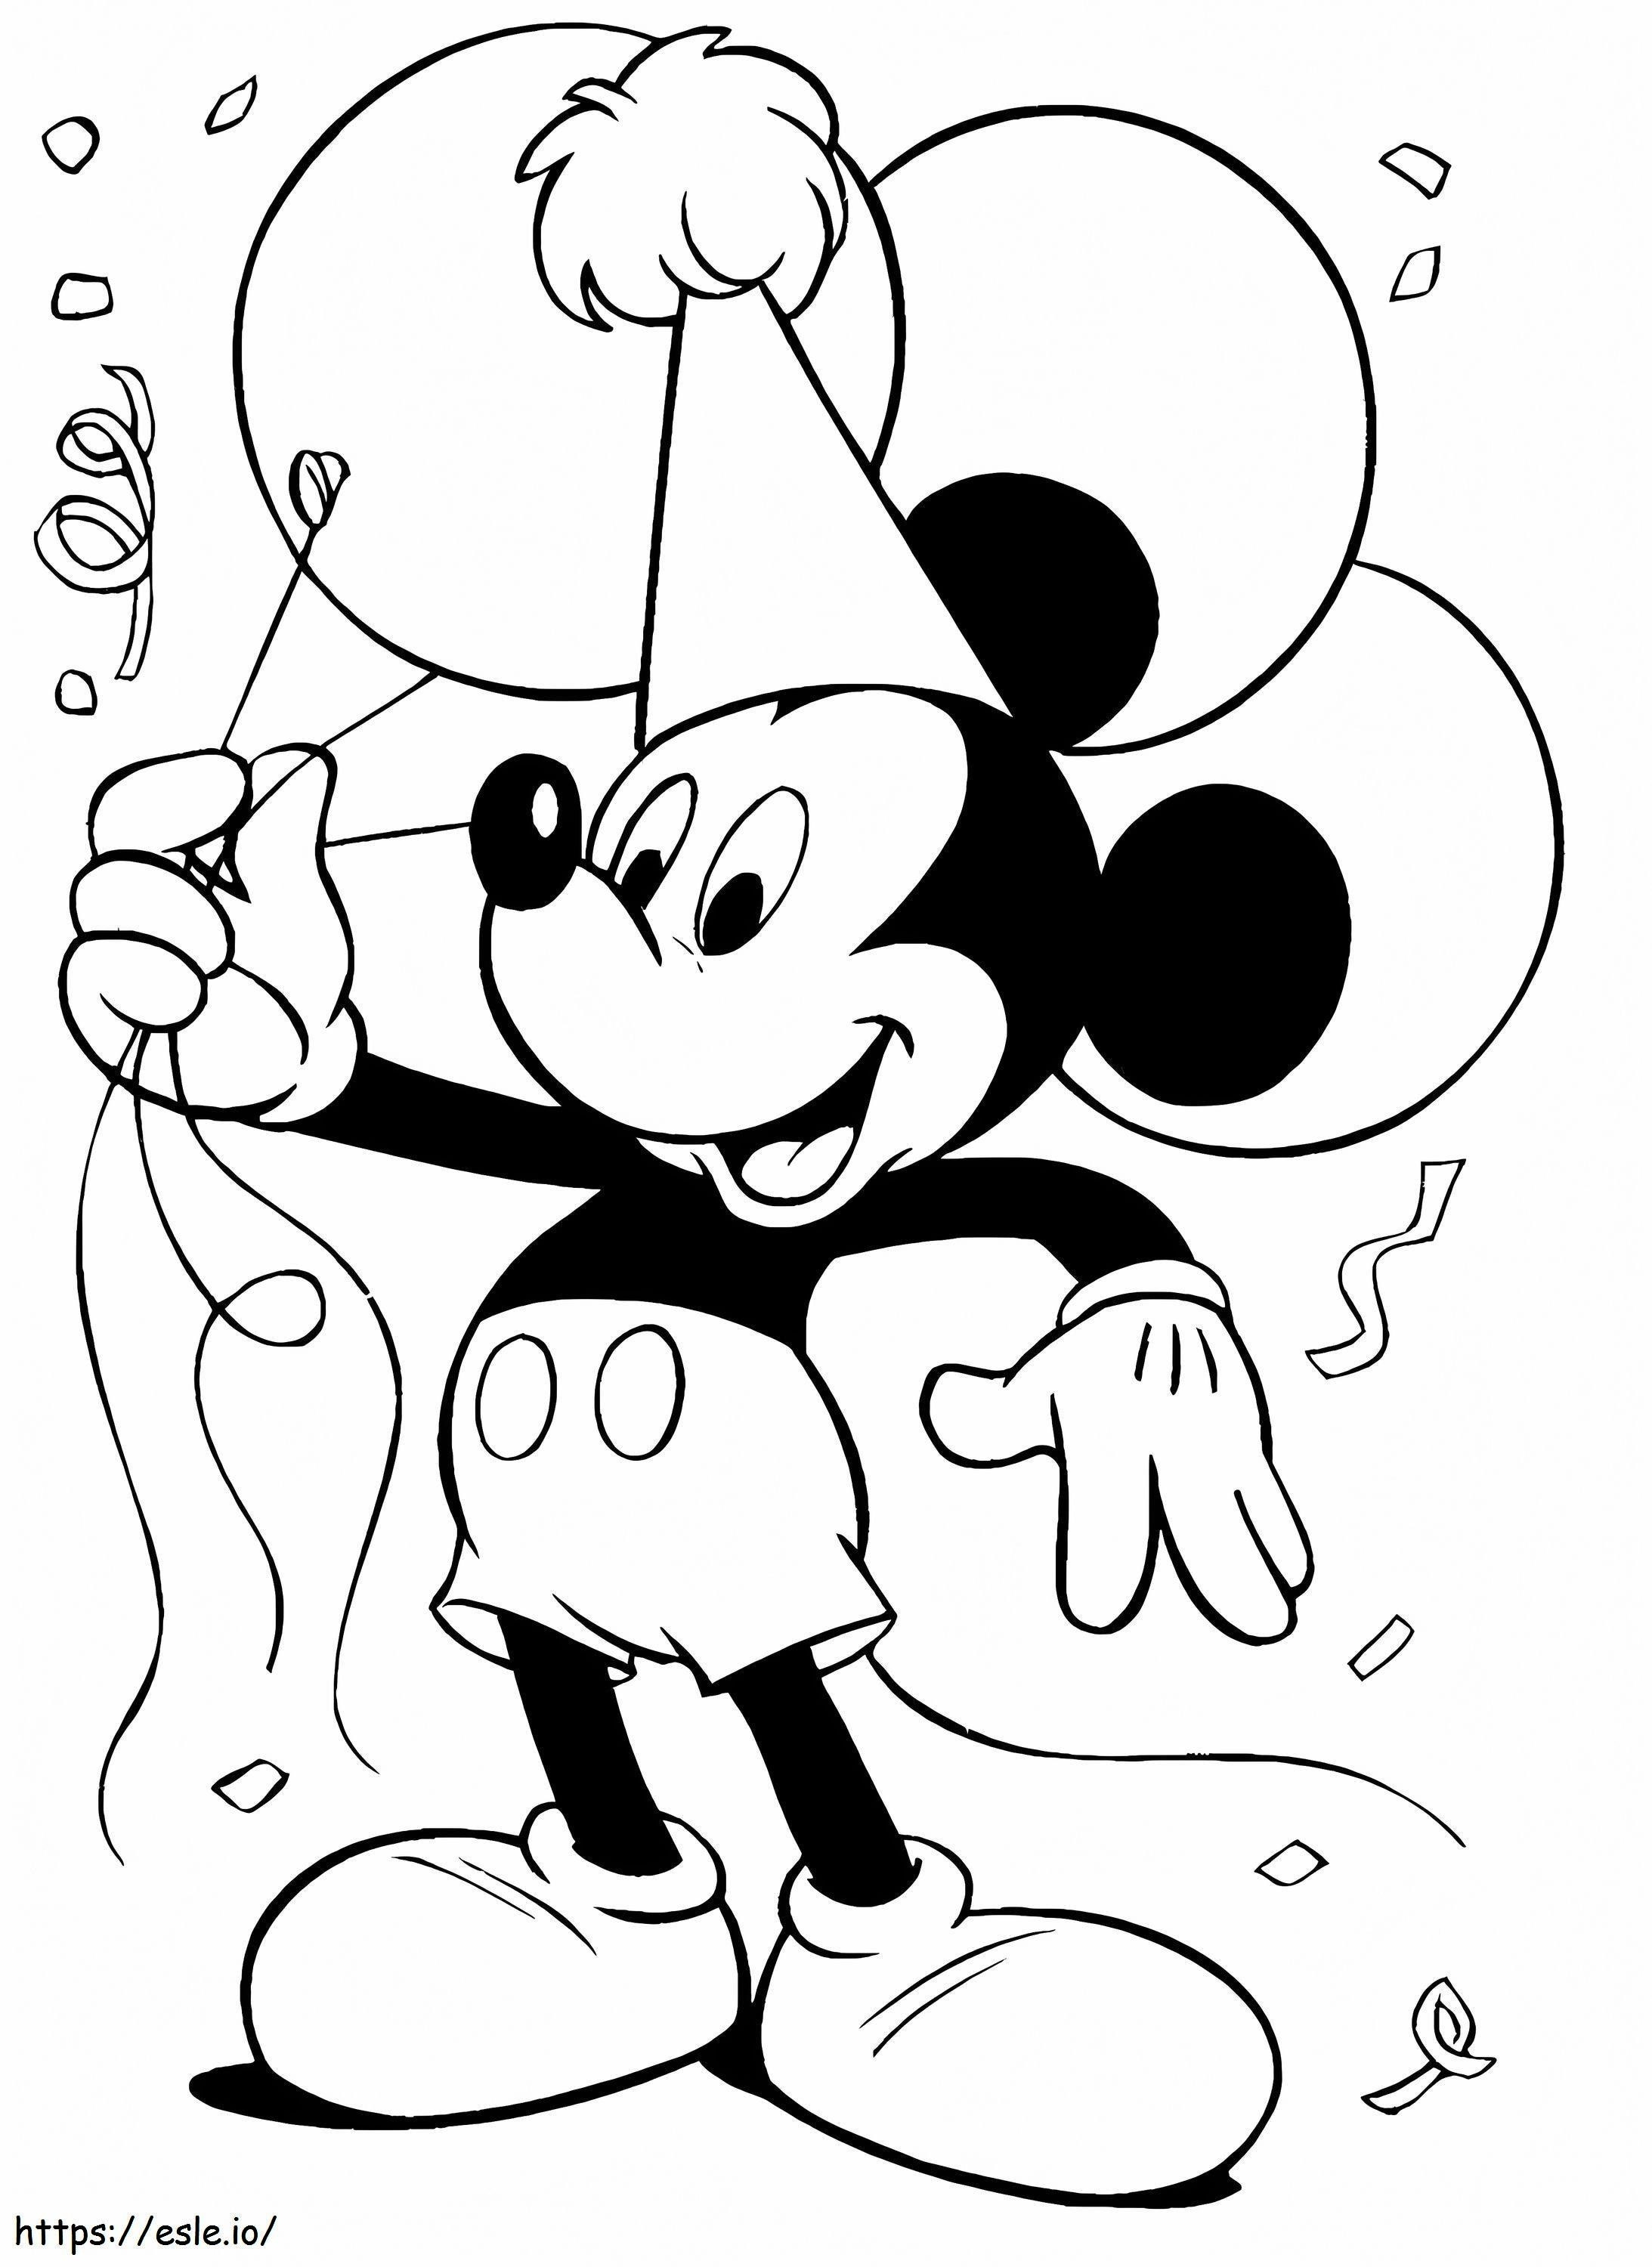 Mickey Mouse e balão para colorir